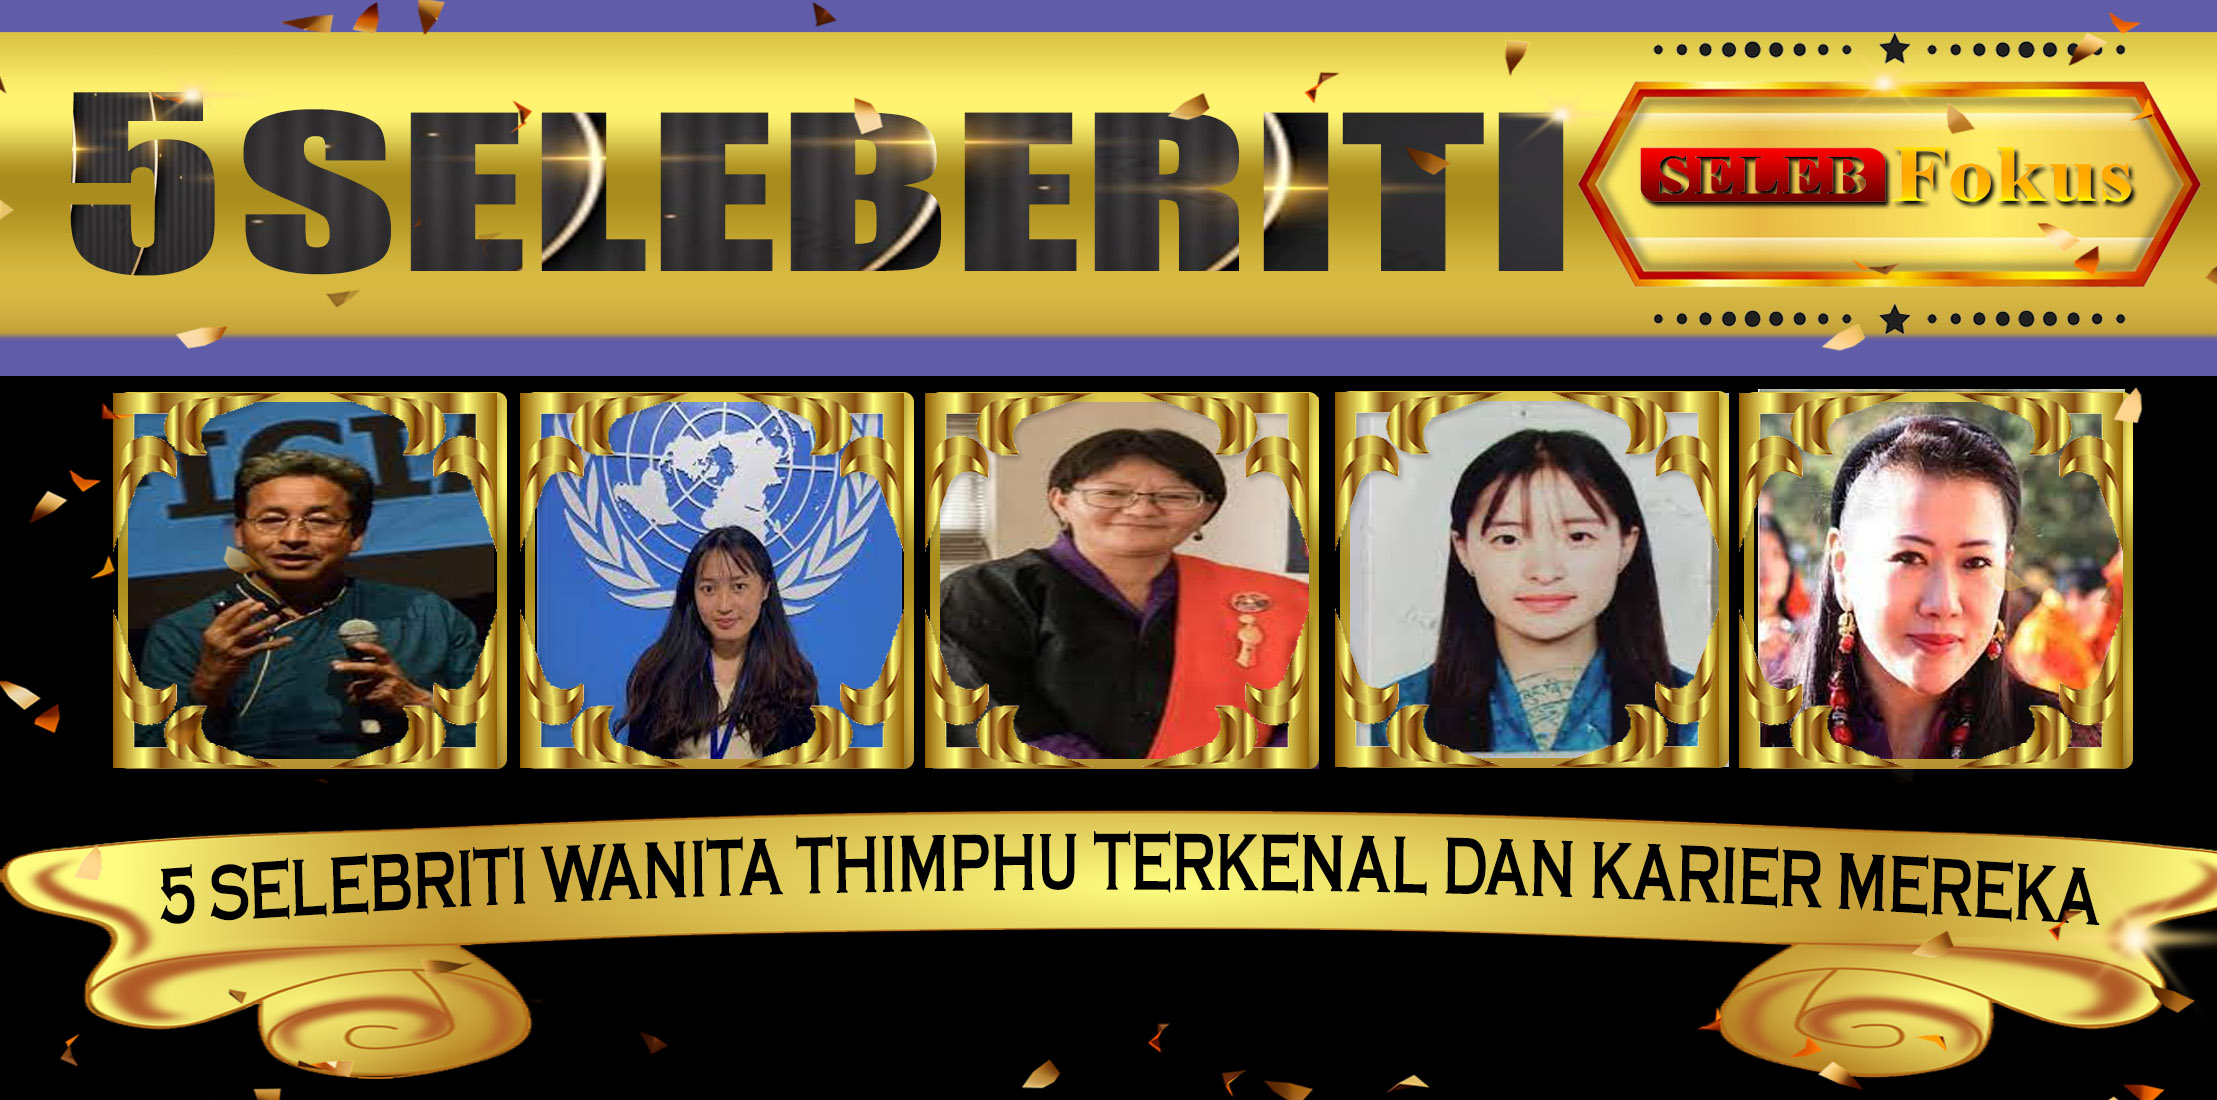 5 Selebriti Wanita Thimphu Terkenal dan Karier Mereka